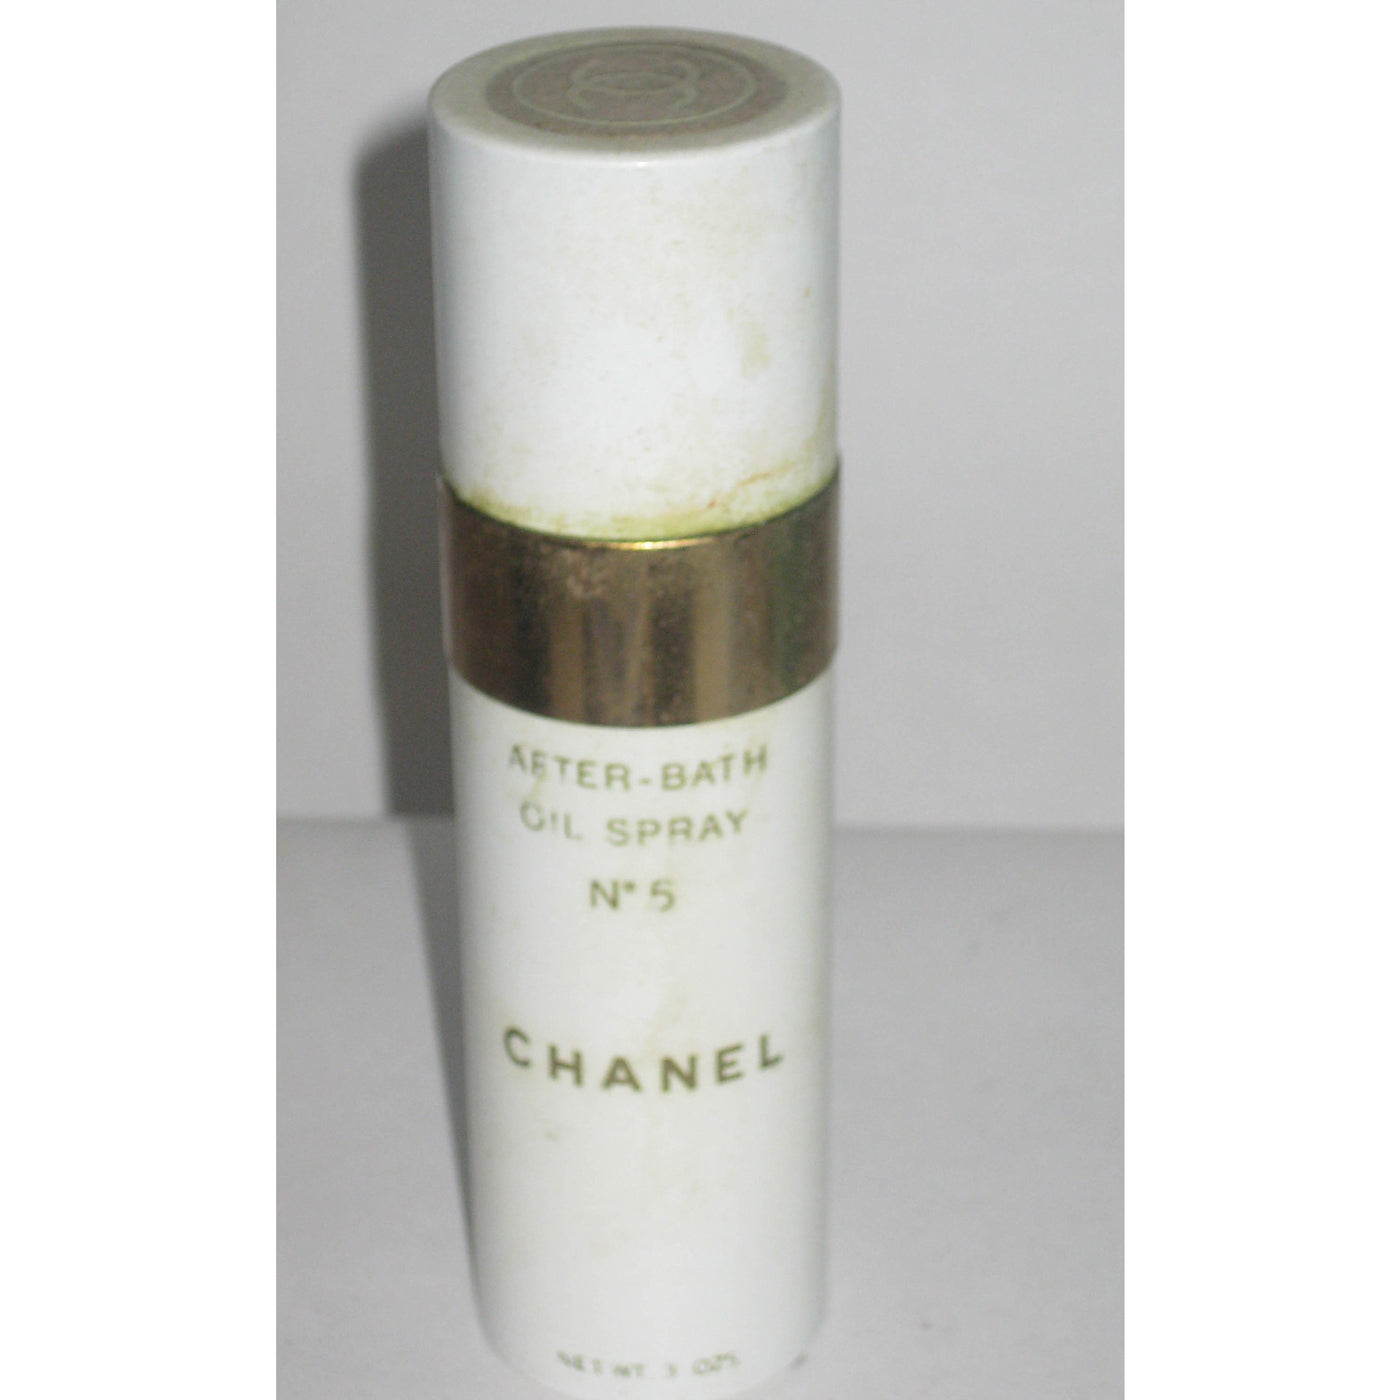 Vintage Chanel No 5 After-Bath Oil Spray